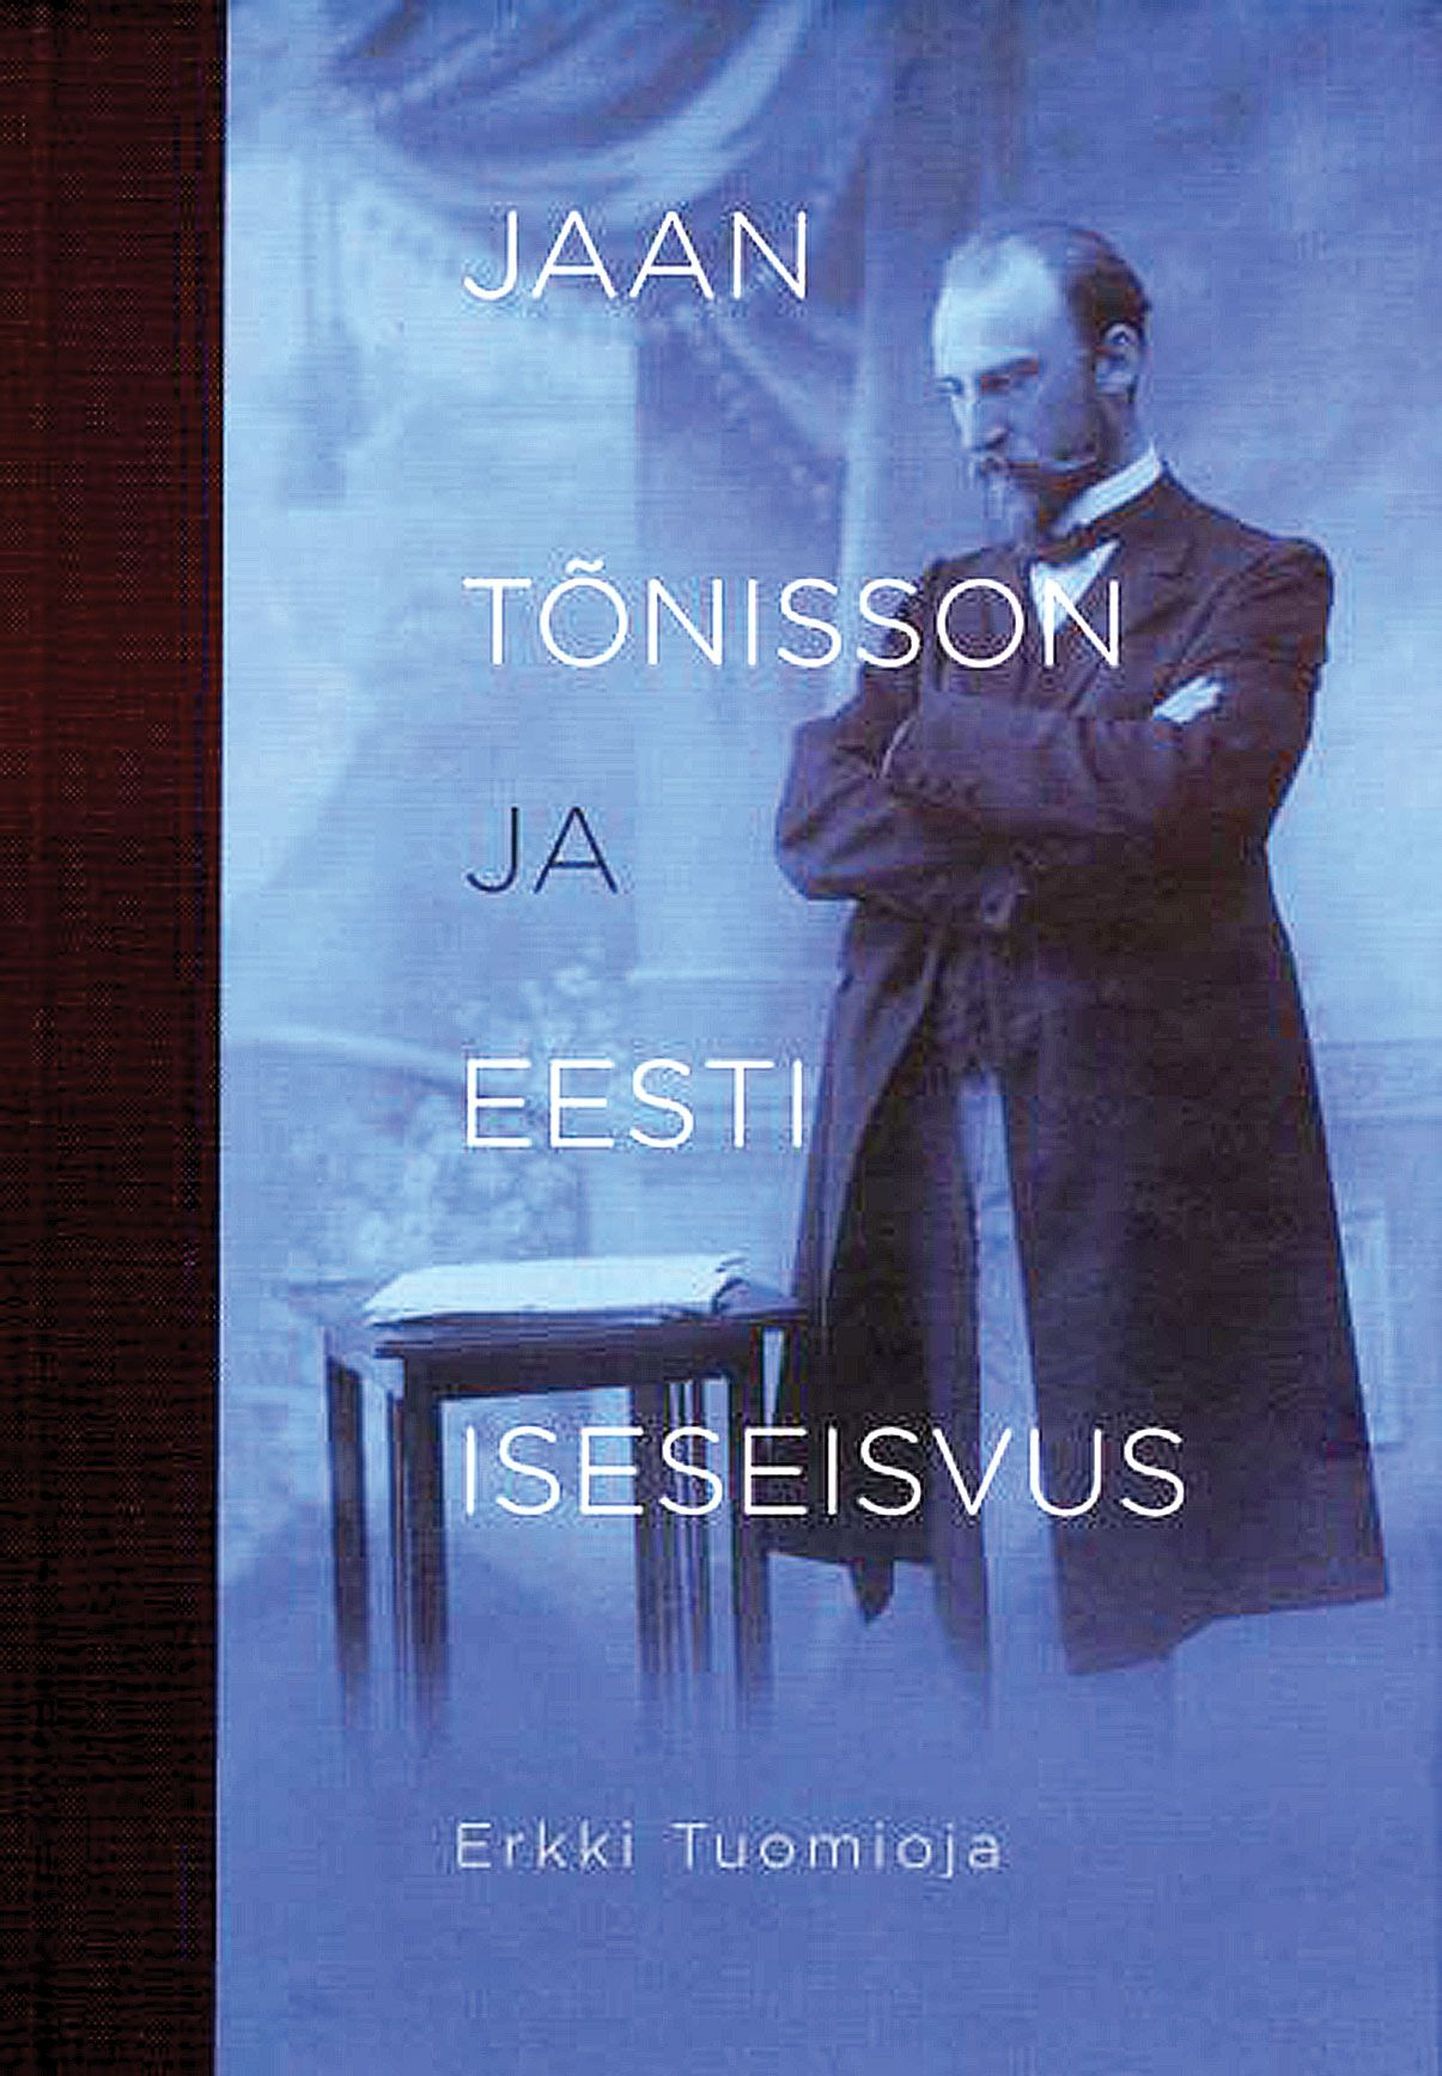 Erkki Tuomioja, «Jaan Tõnisson ja Eesti iseseisvus»,